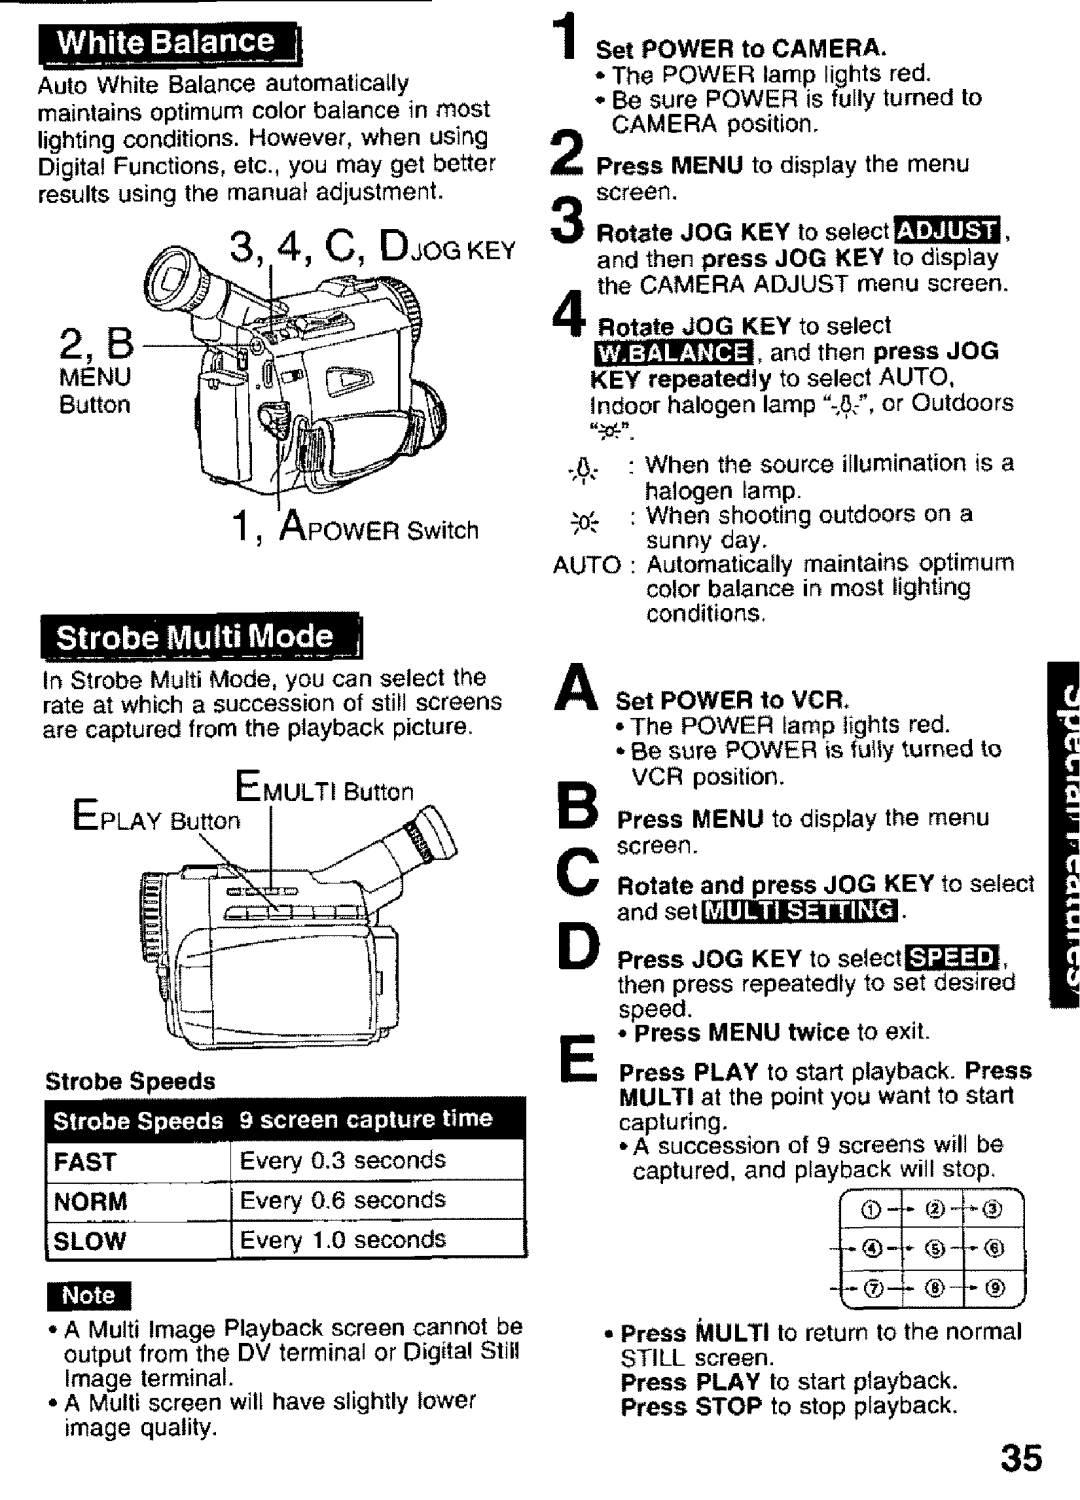 Panasonic PV-DV101 manual EP YBuEMULTB,,ttoo.o, 4, C, DJOGKEY, Ifffff4 